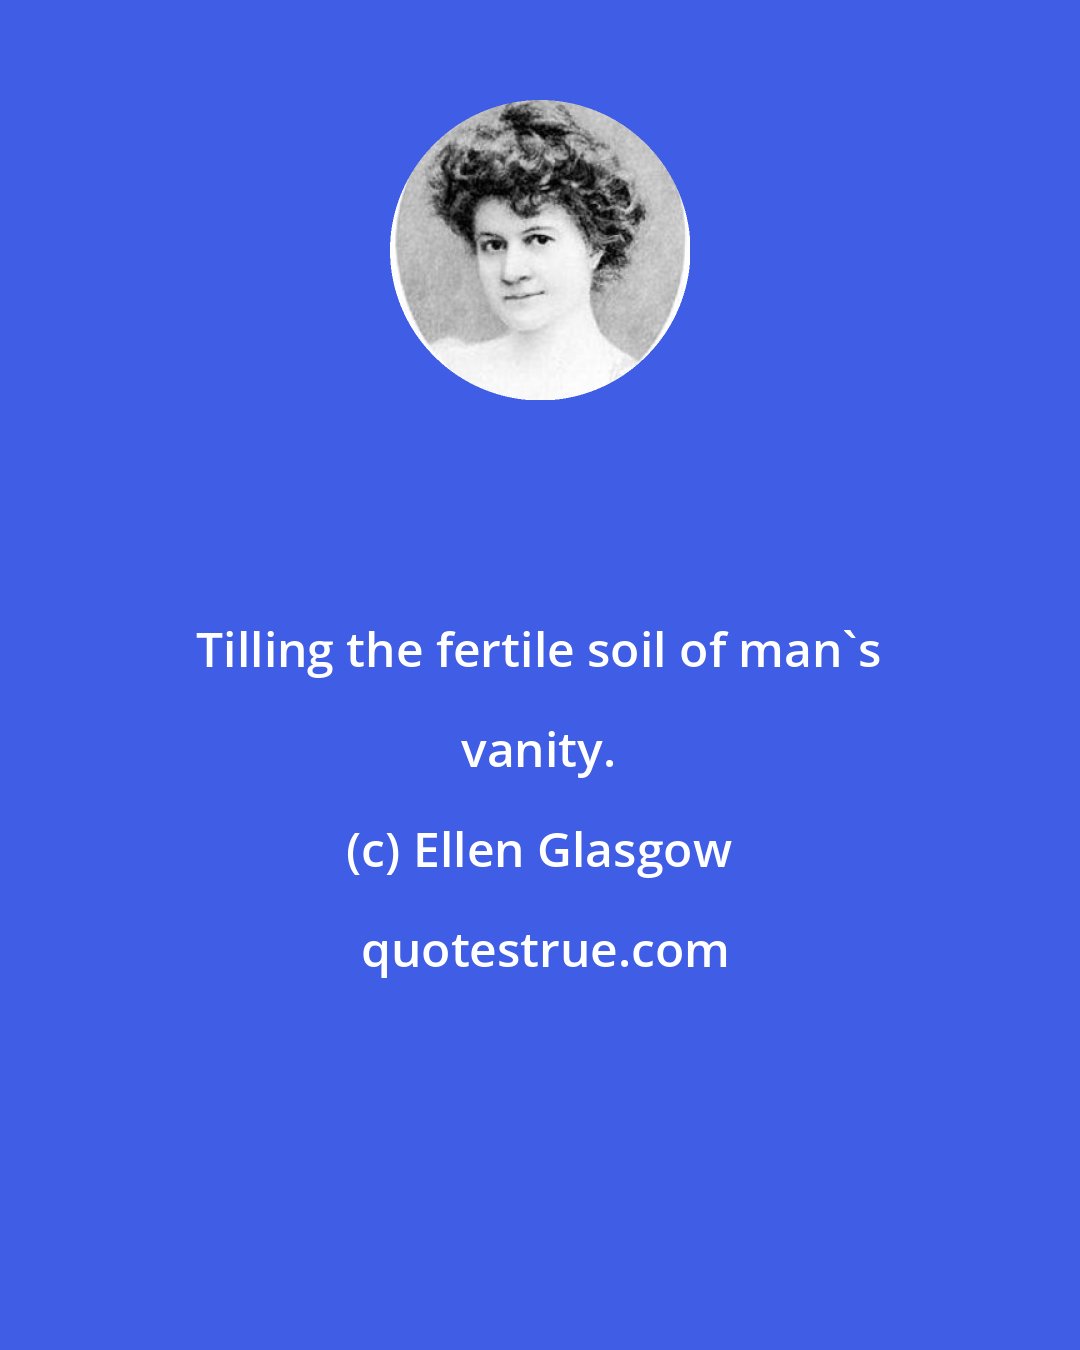 Ellen Glasgow: Tilling the fertile soil of man's vanity.